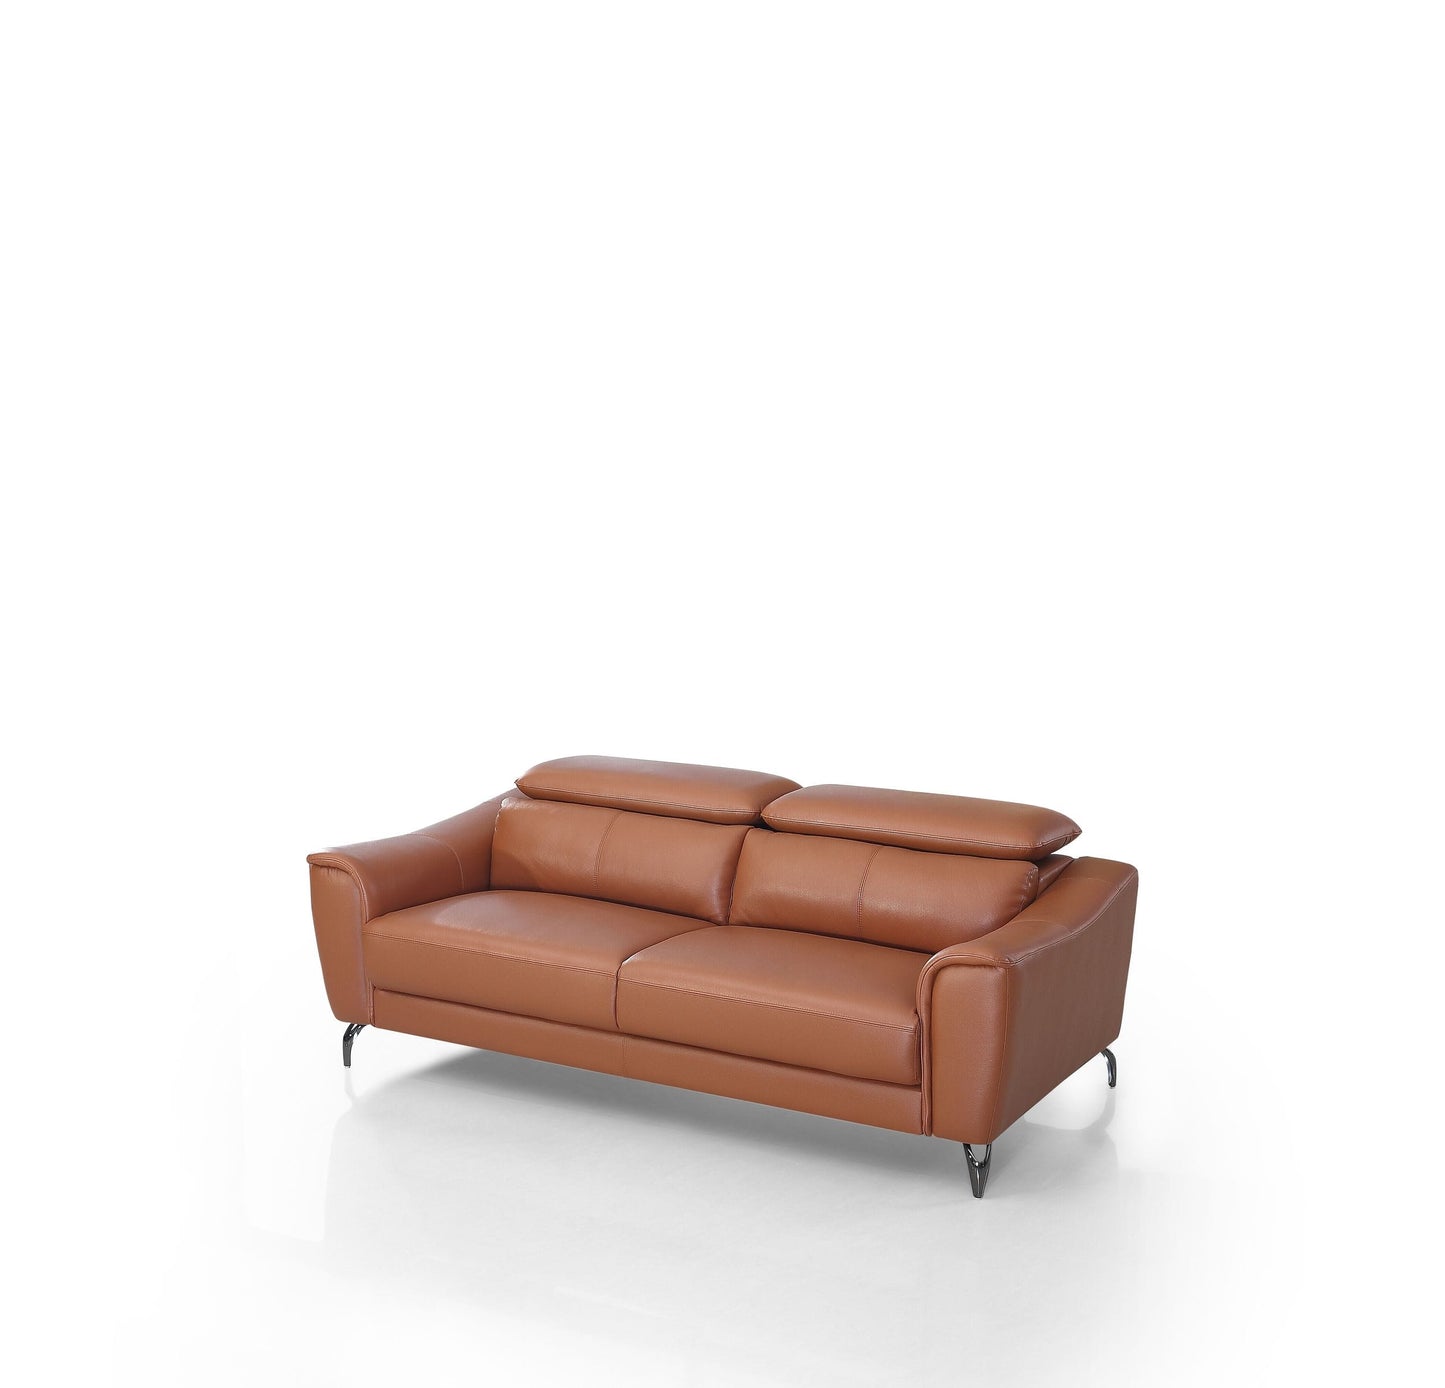 VIG Furniture Divani Casa Danis Cognac Leather Brown Sofa